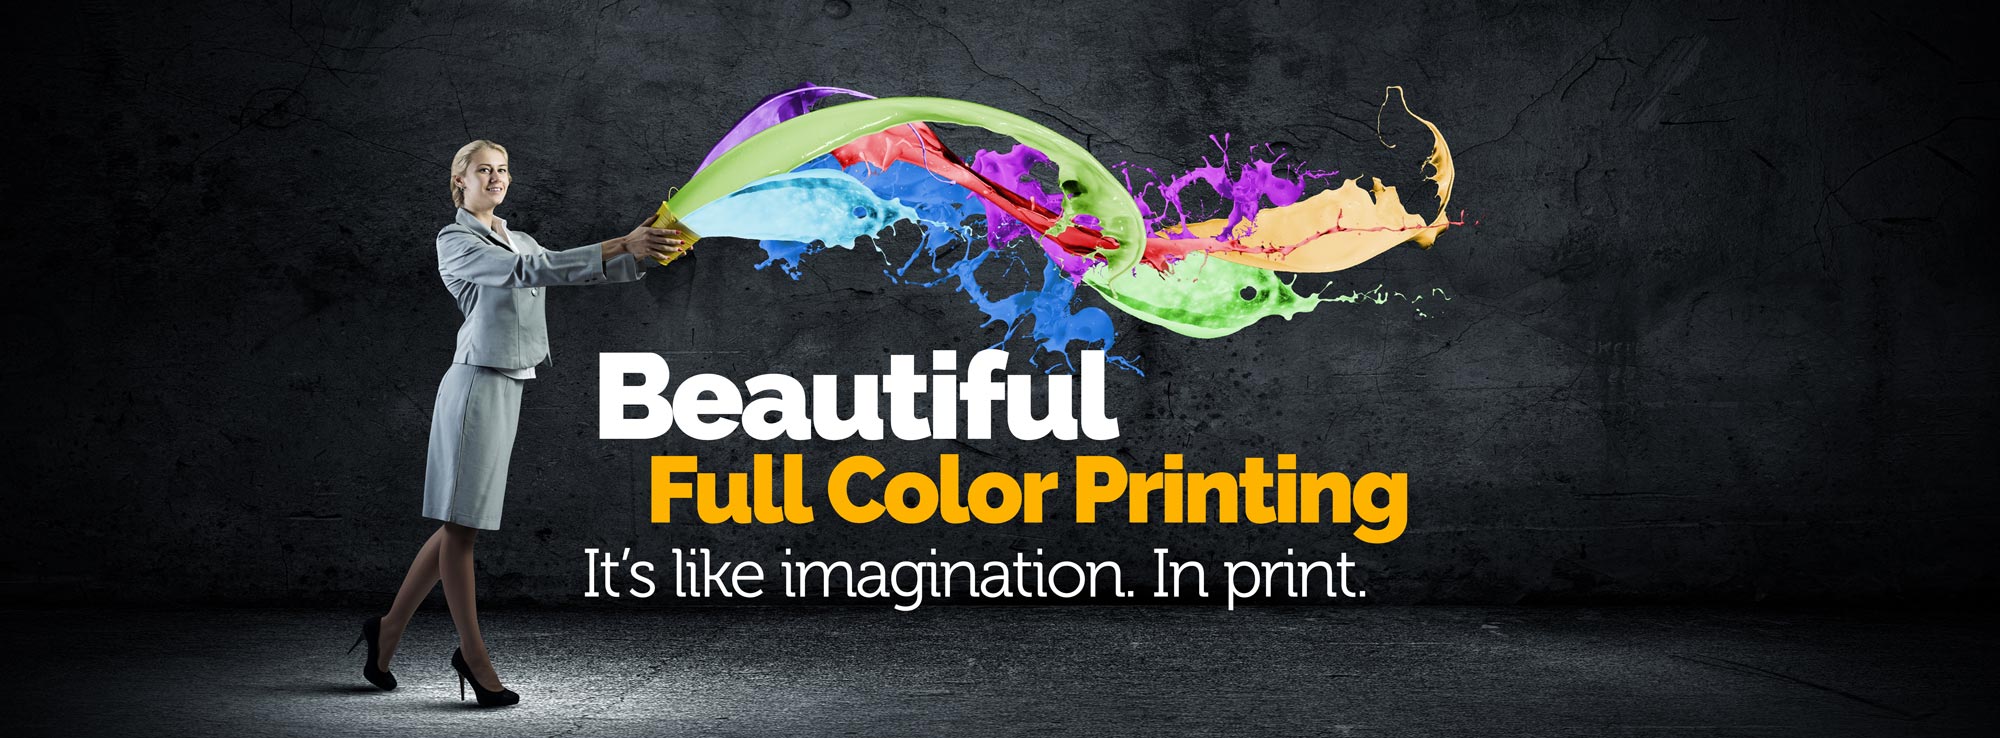 Recite gentage Uplifted Full Color Printing - Splash Designworks